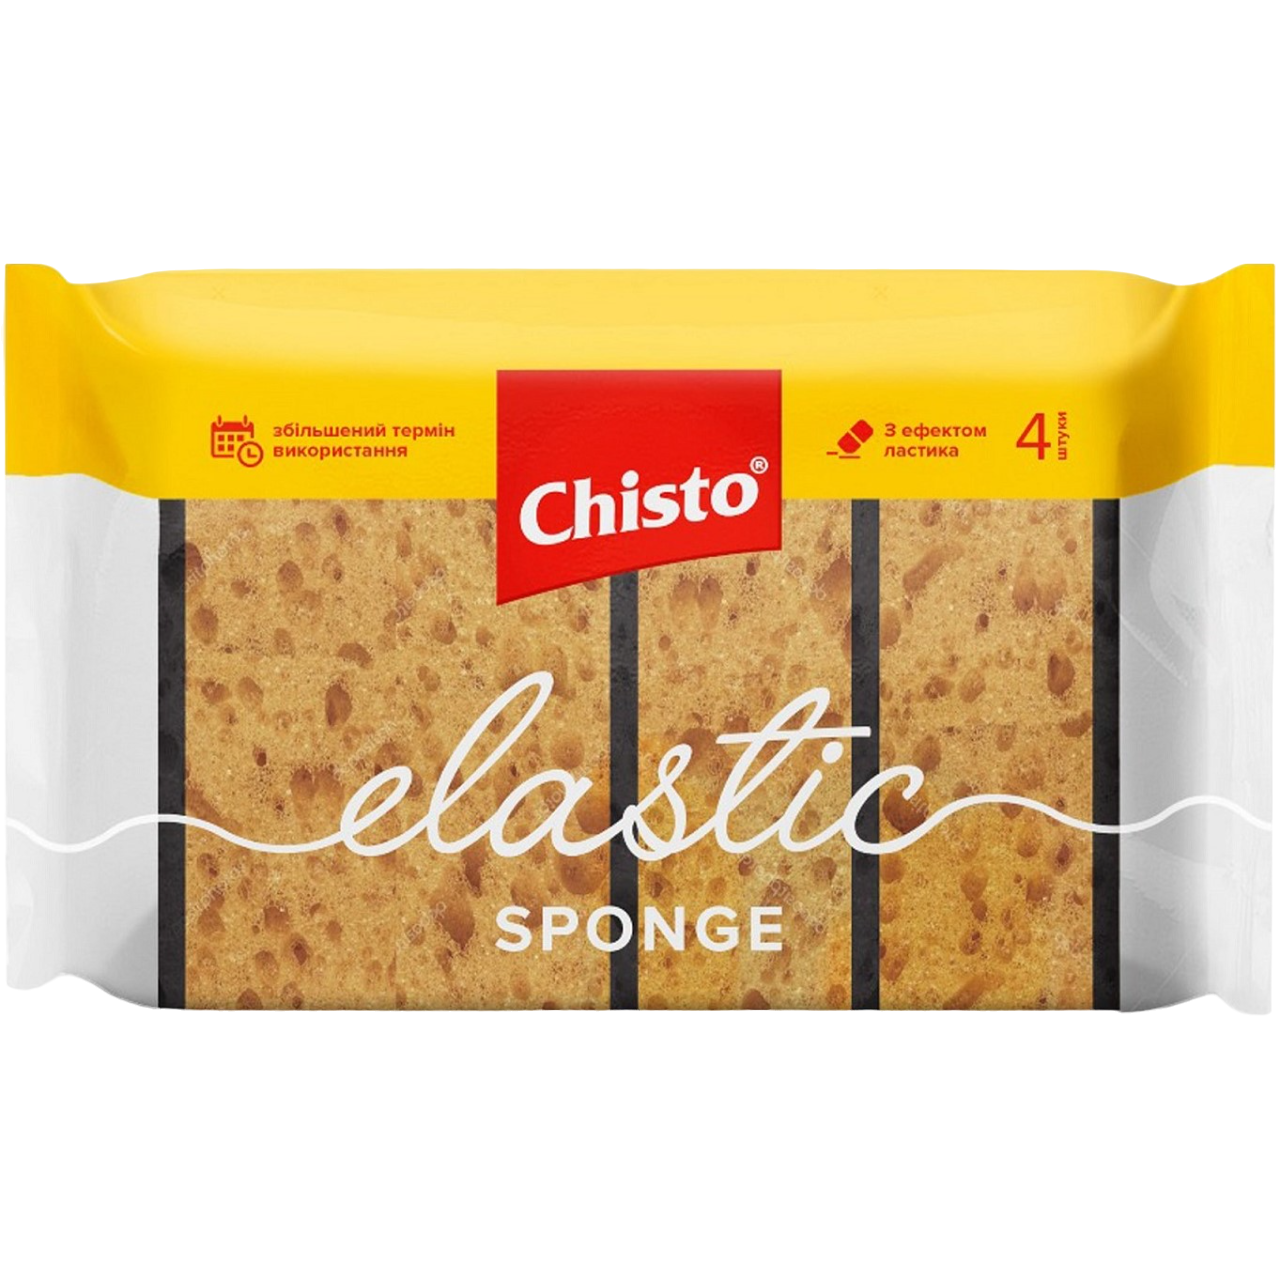 Губки кухонные Chisto Elastic Sponge, 4 шт. - фото 1